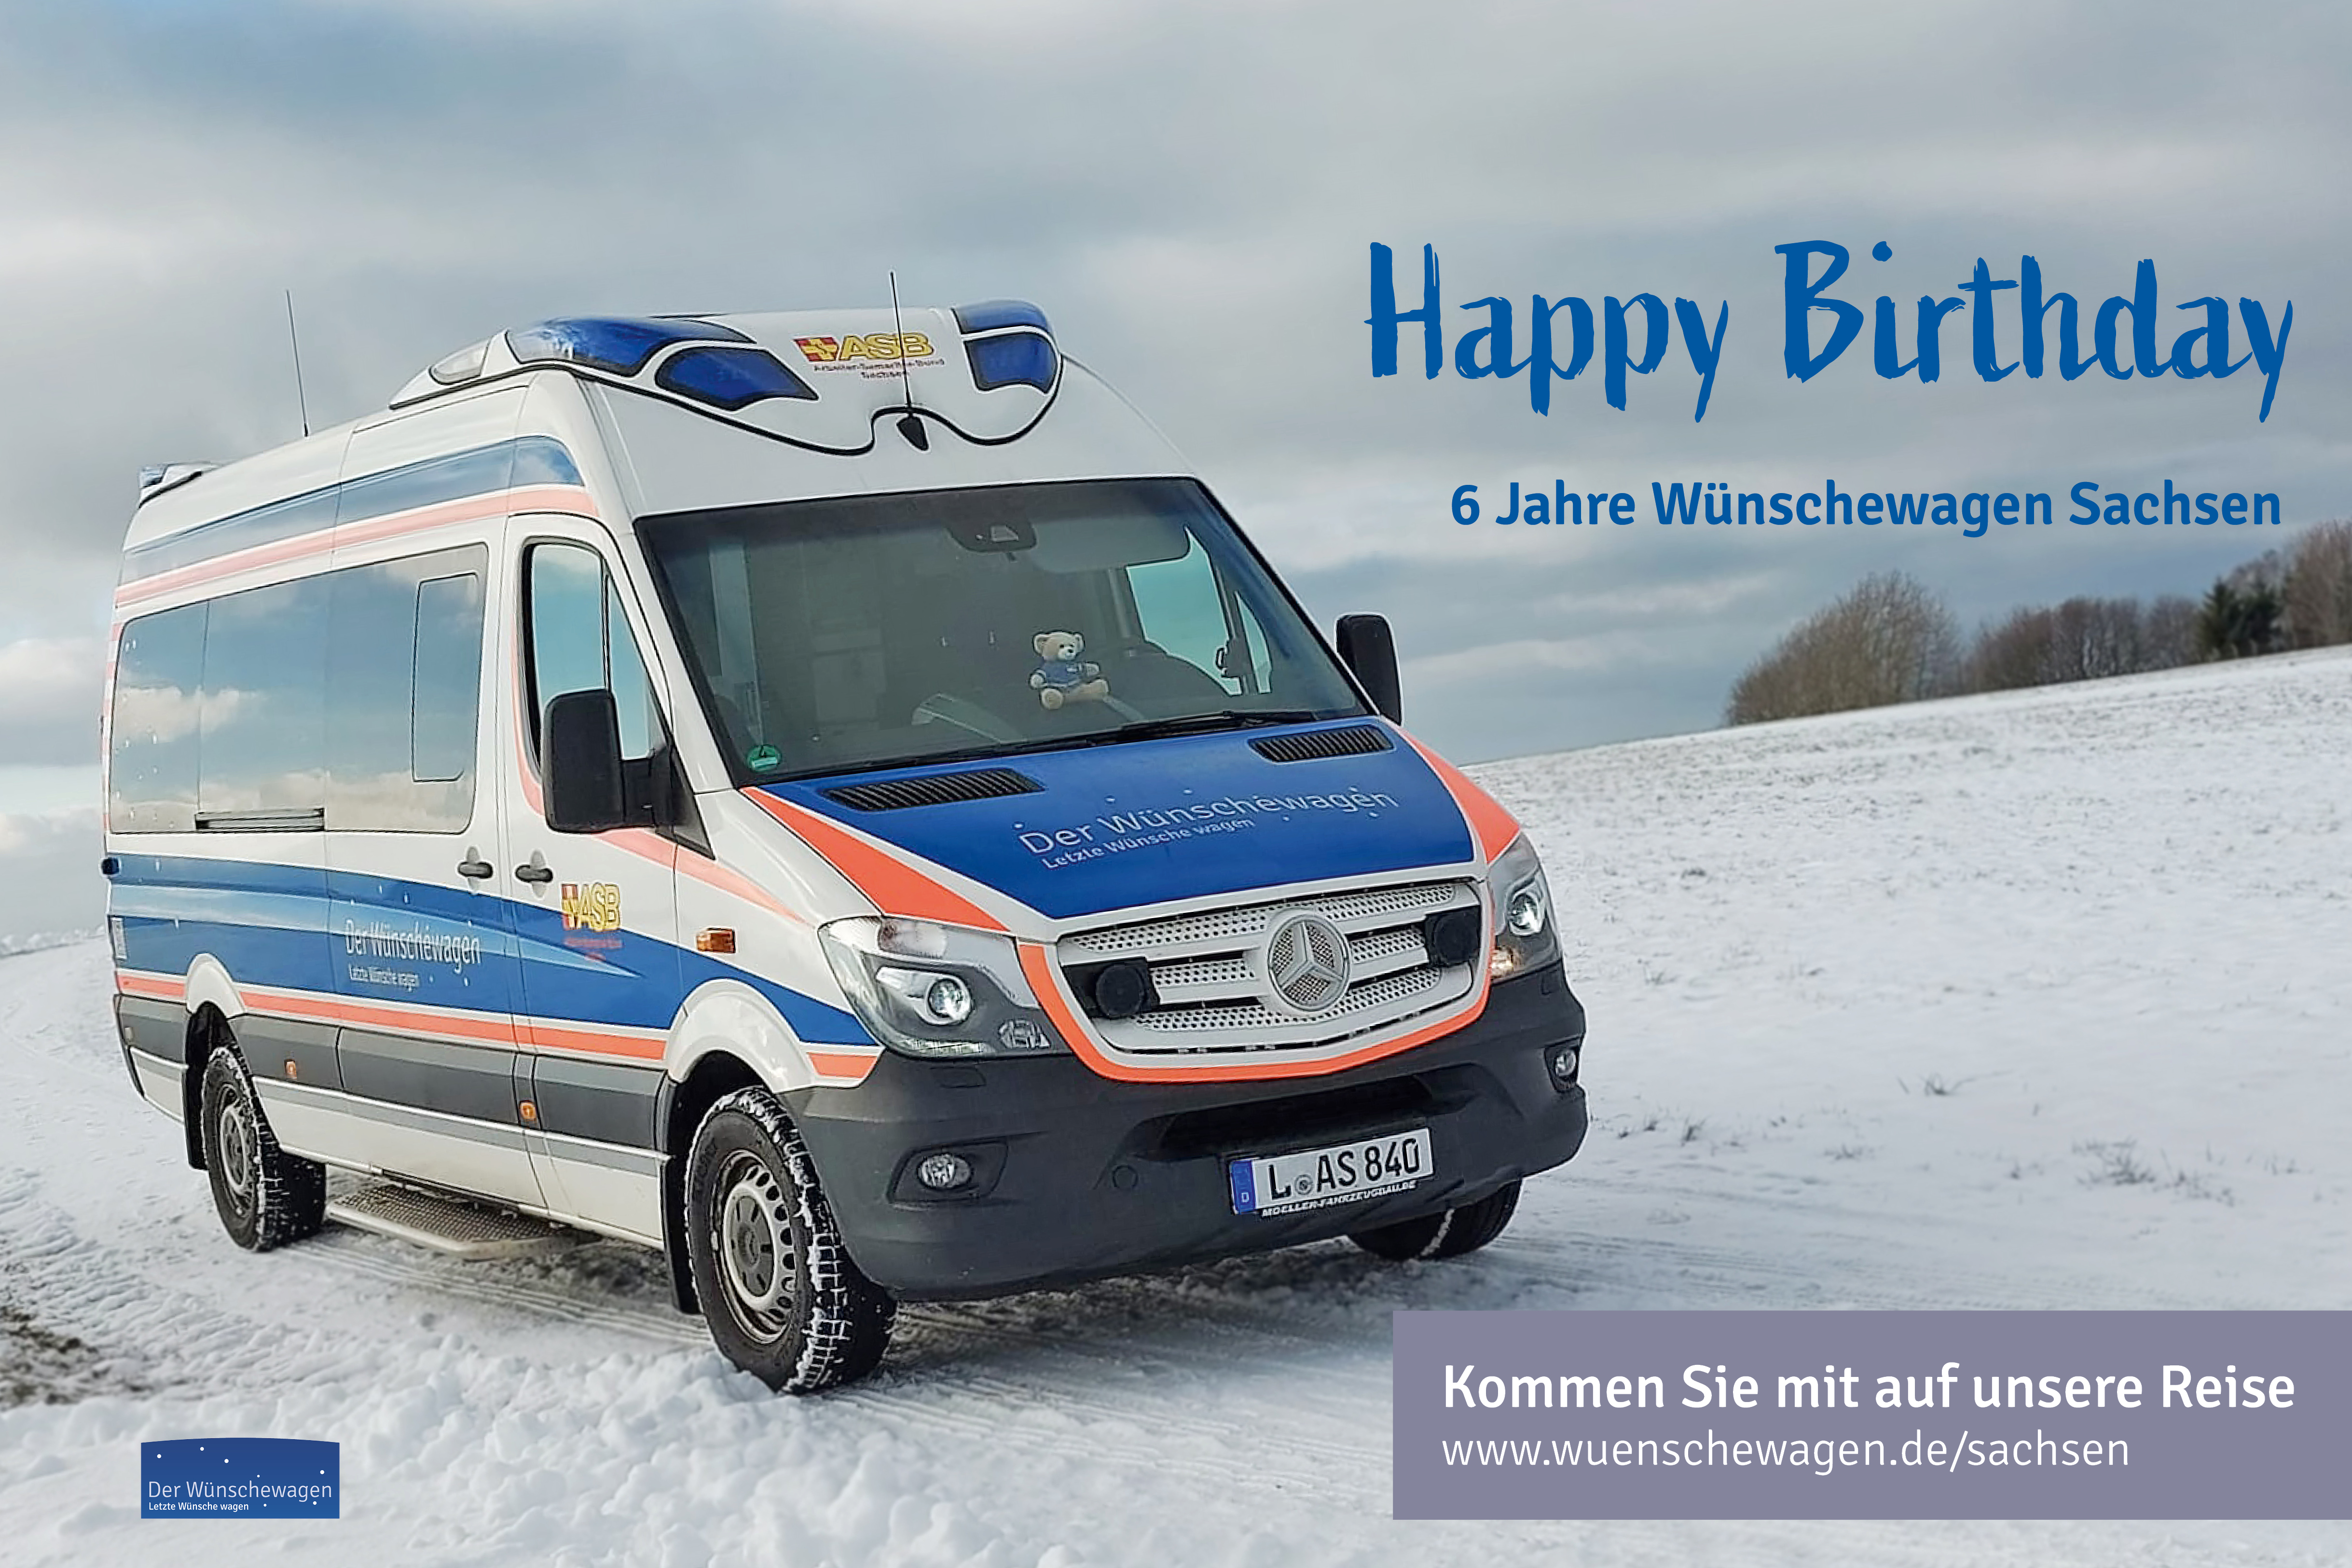 Wünschewagen Sachsen feiert seinen 6. Geburtstag